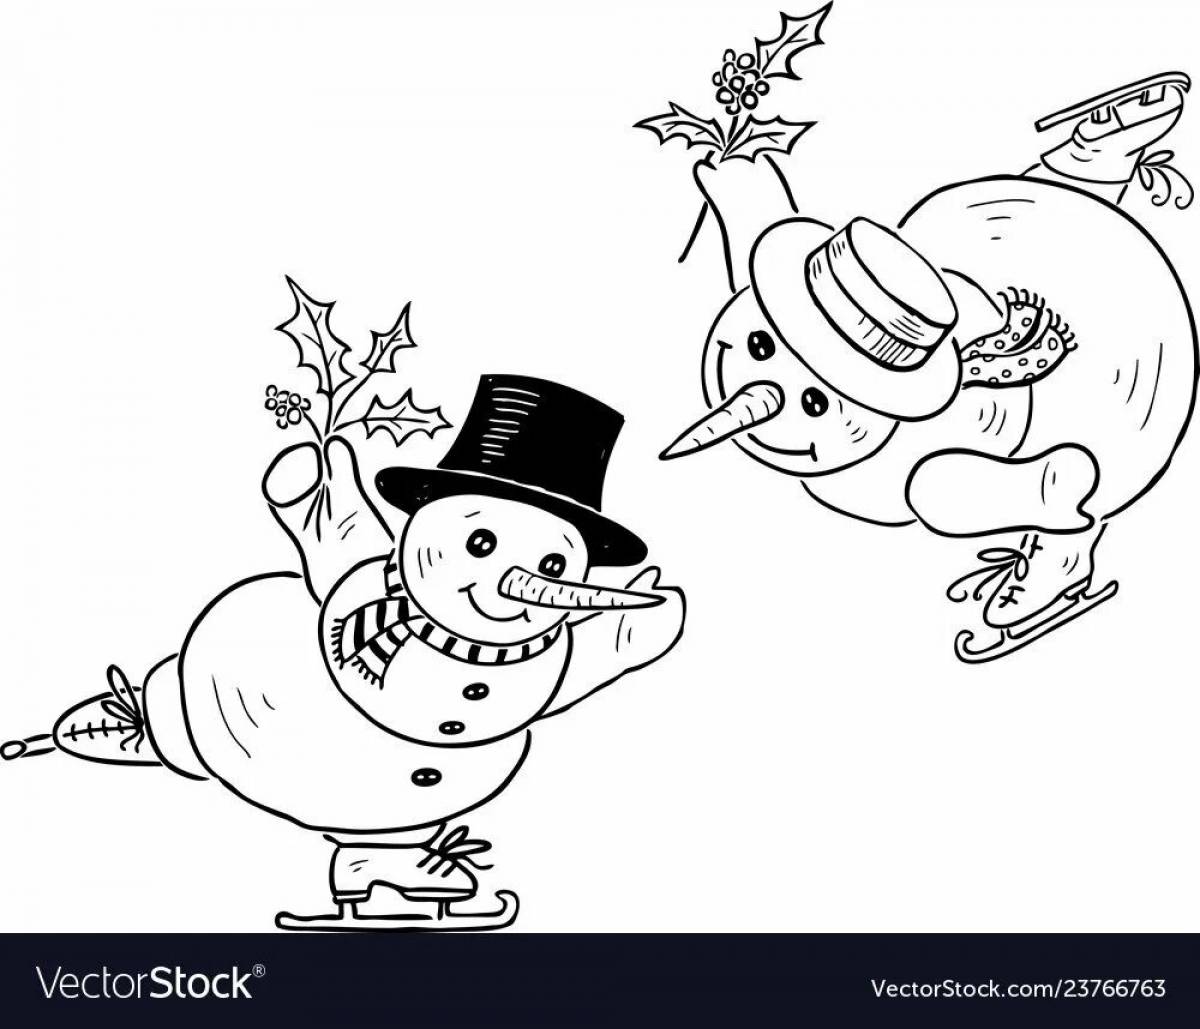 Skating snowman #6